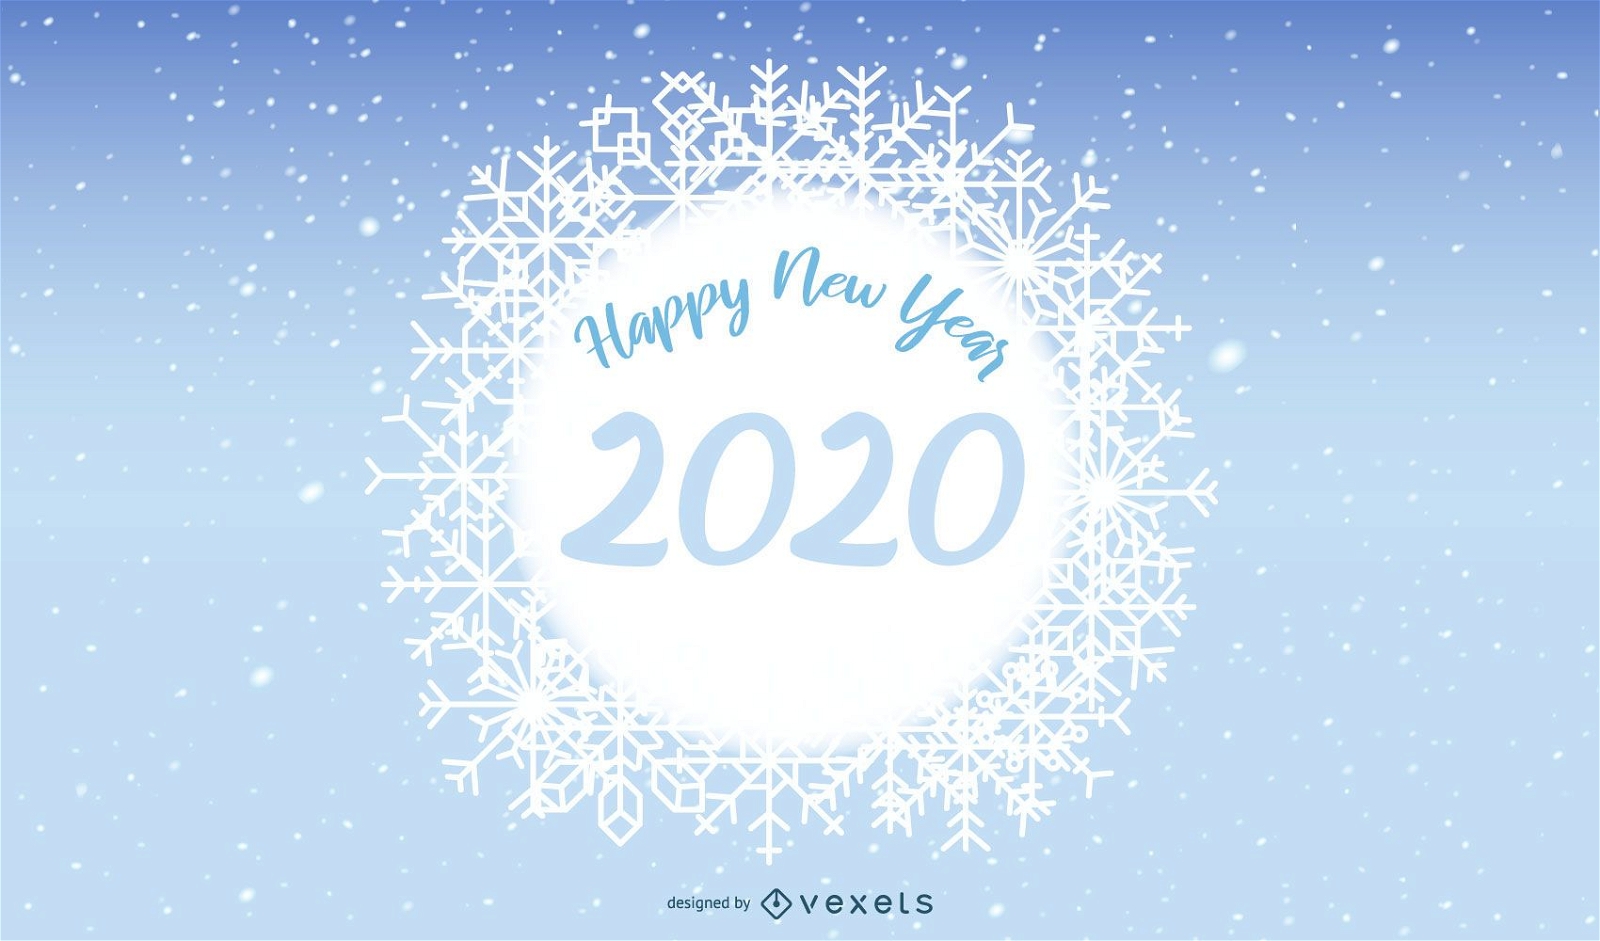 Banner de copo de nieve 2020 a?o nuevo